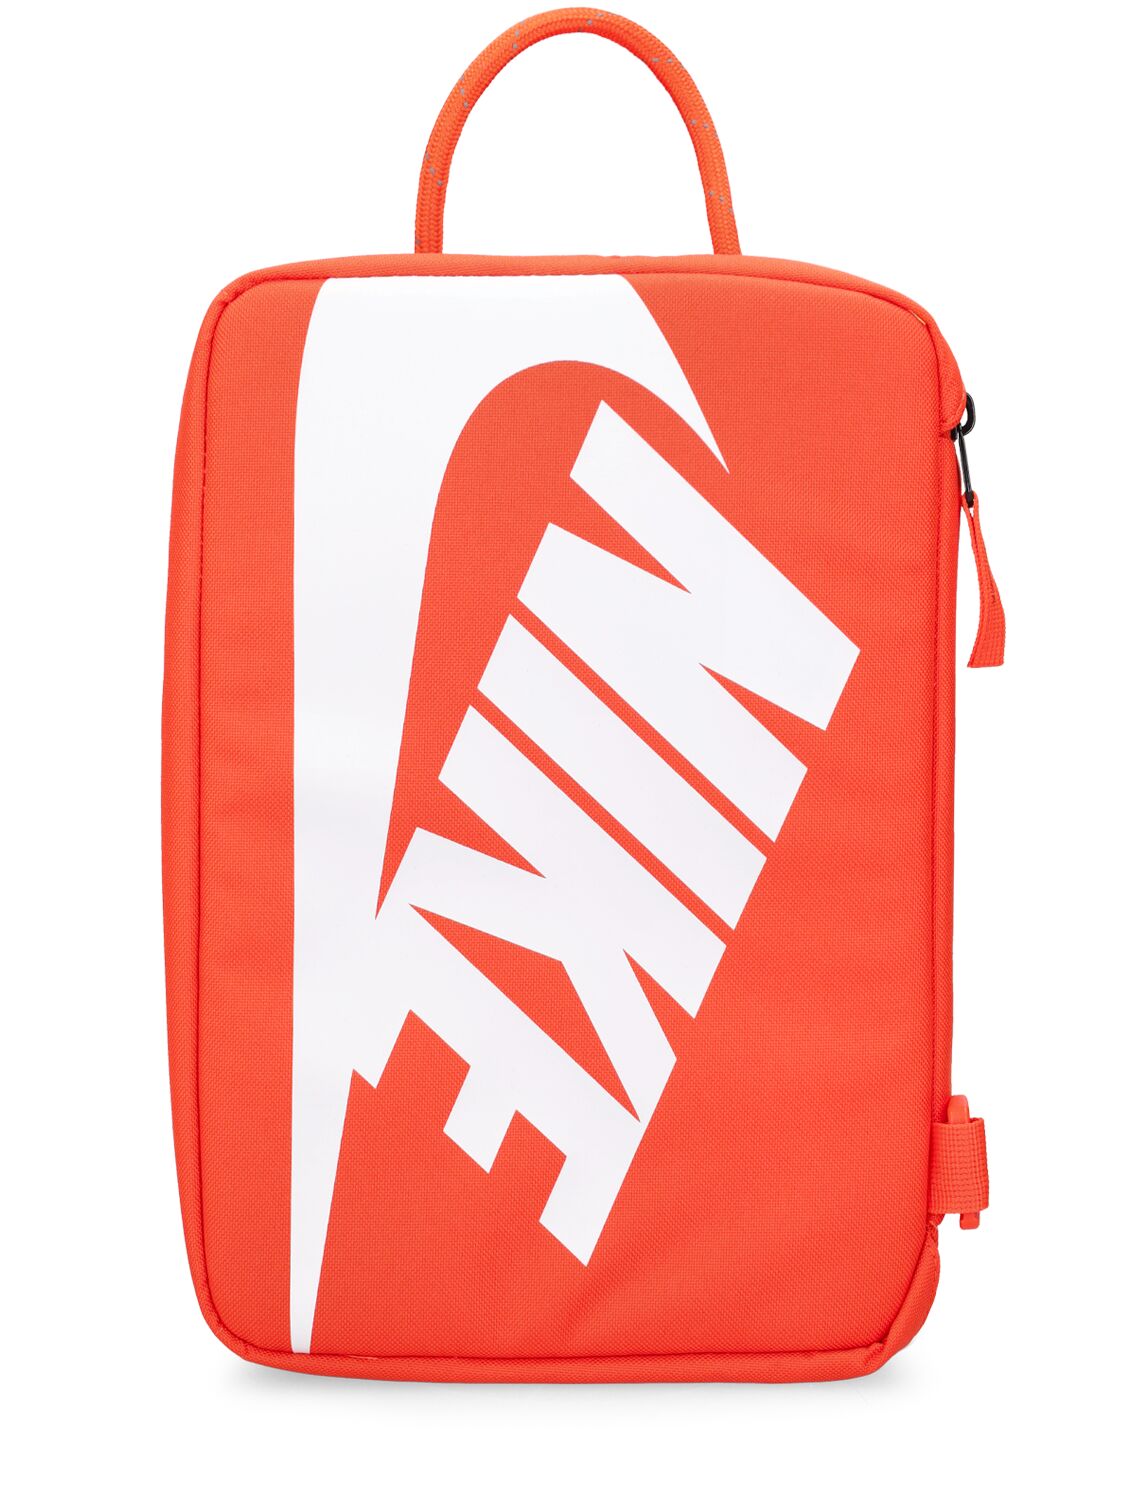 Accessoires sac bandoulière Nike pour homme